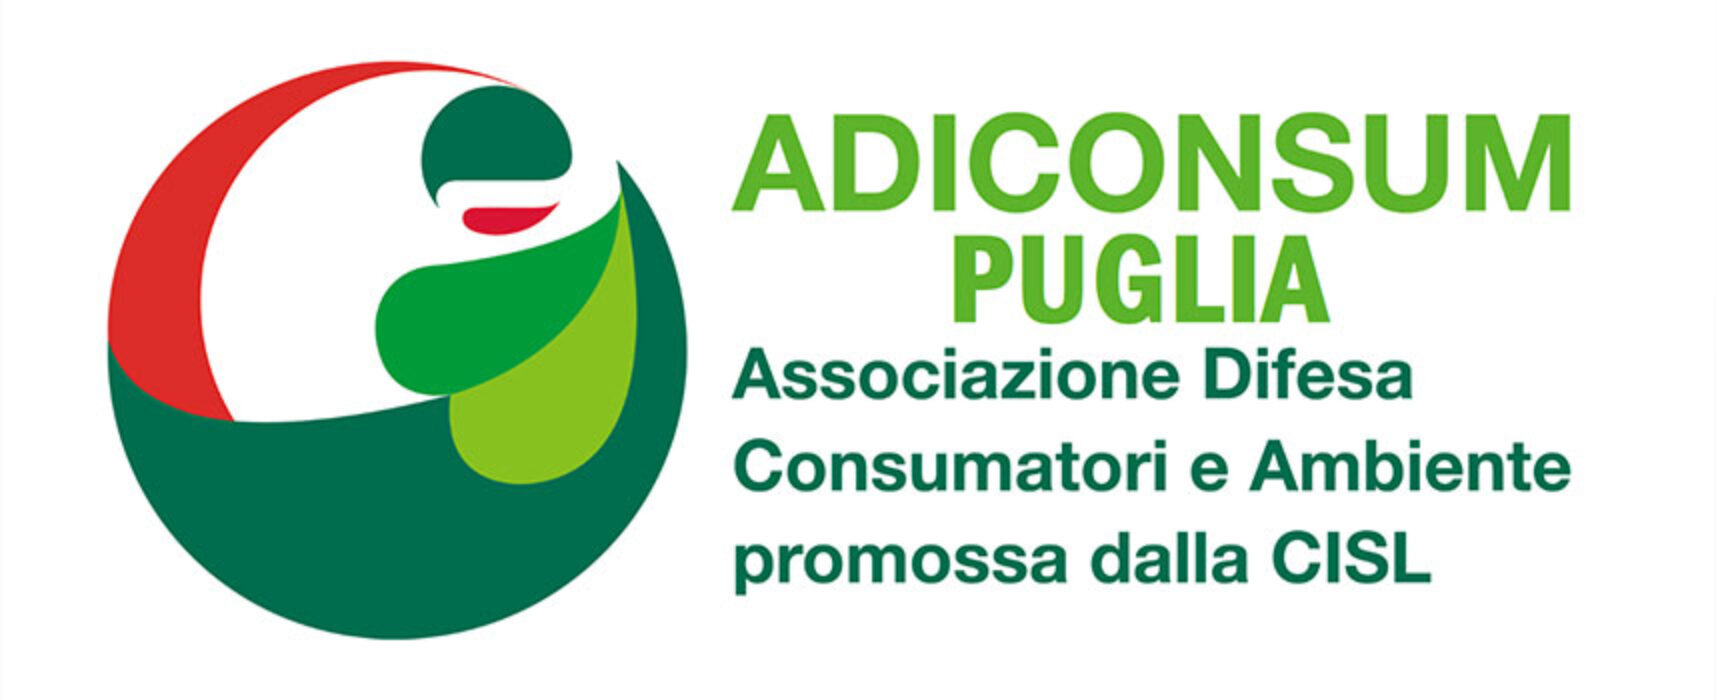 Adiconsum Puglia: “Fornitori di luce e gas non potranno modificare unilateralmente i contratti”